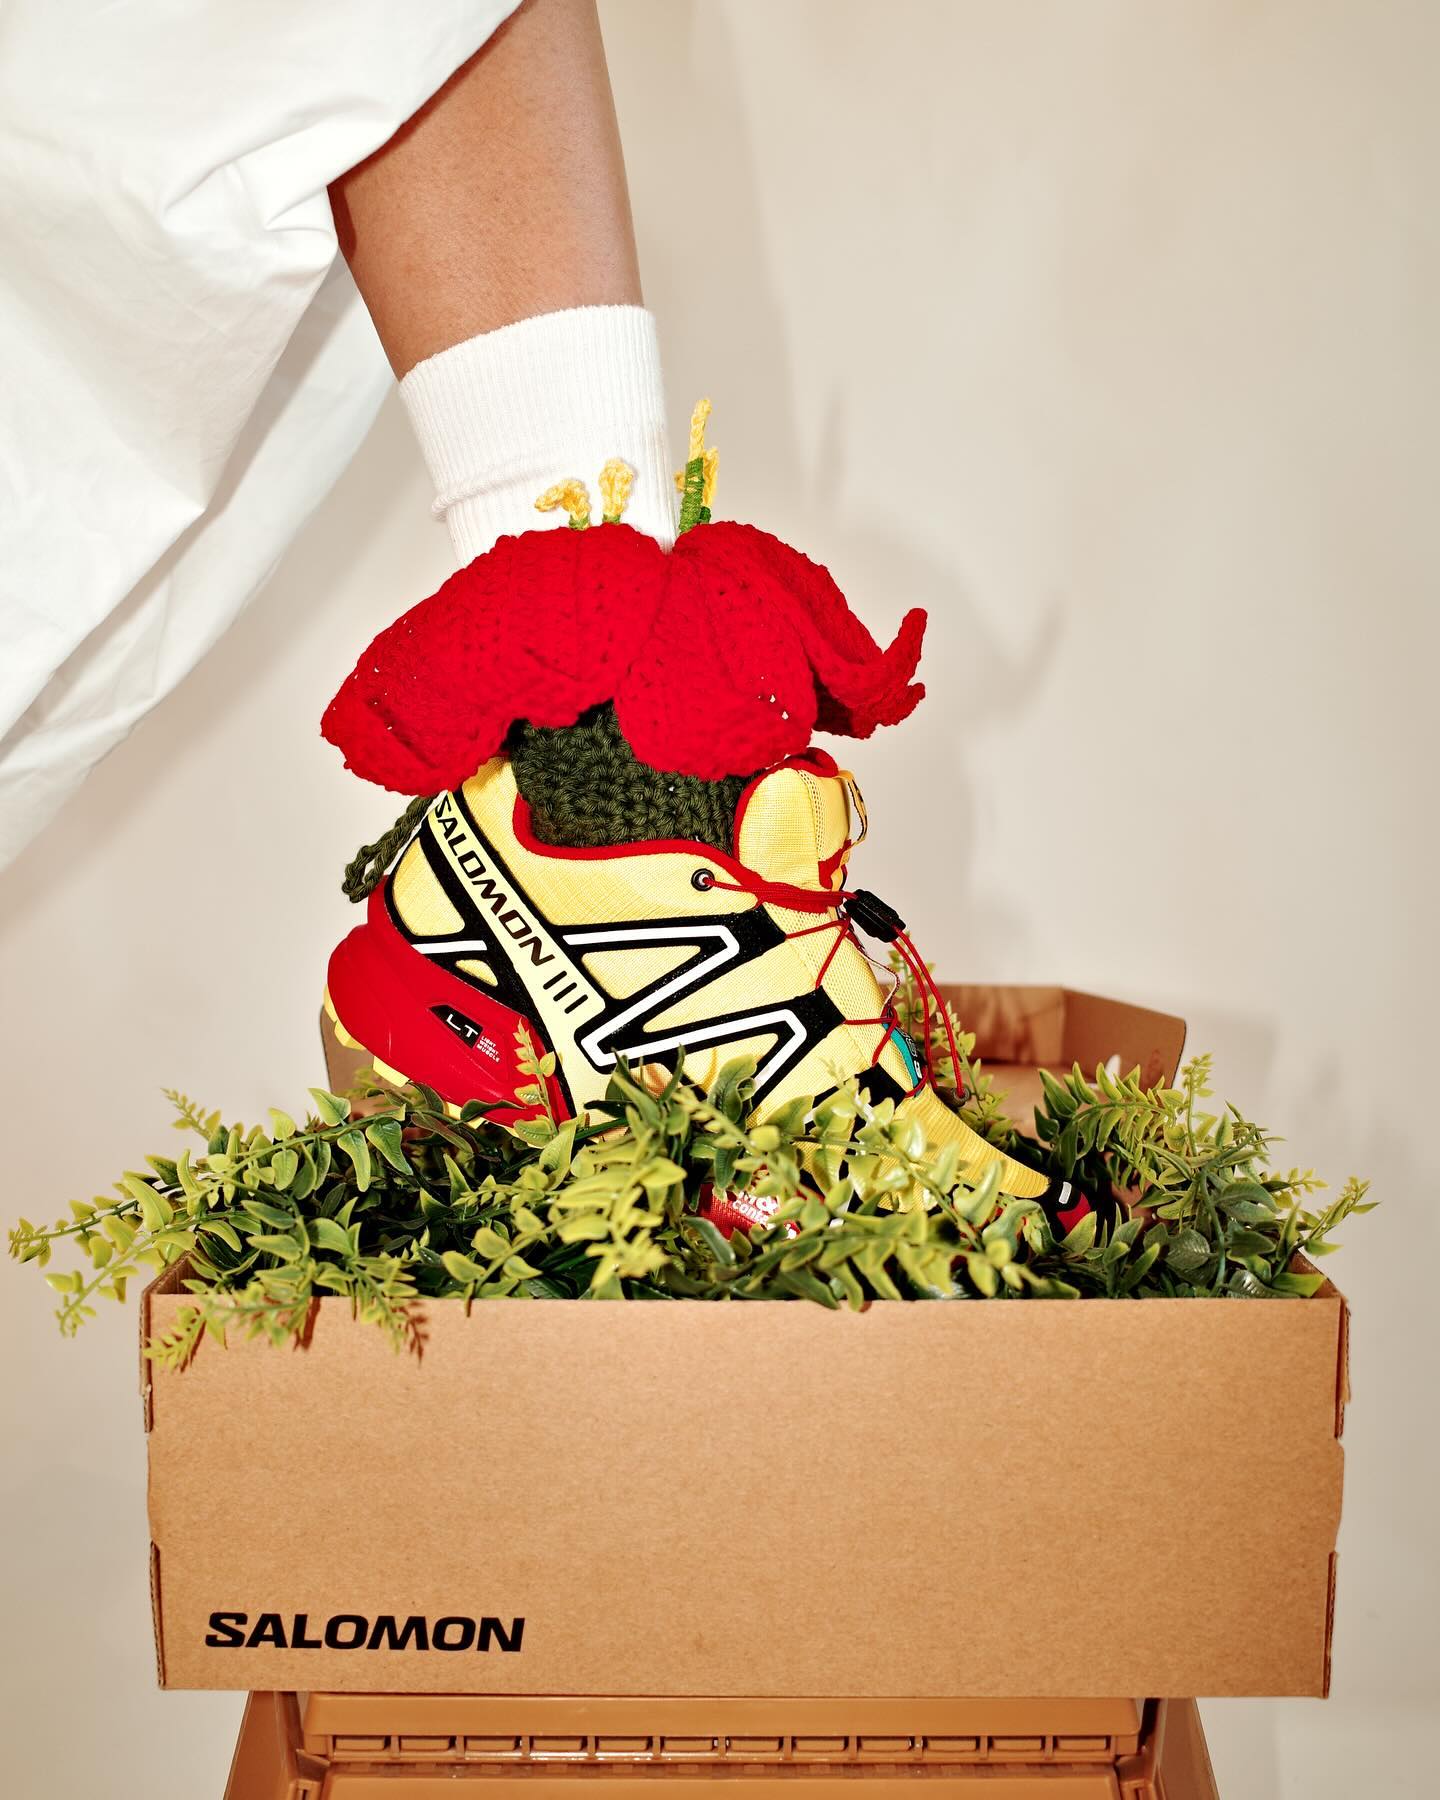 Salomon Speedcross 3 sneakers customized by crochet artist @ilyang.ilyang